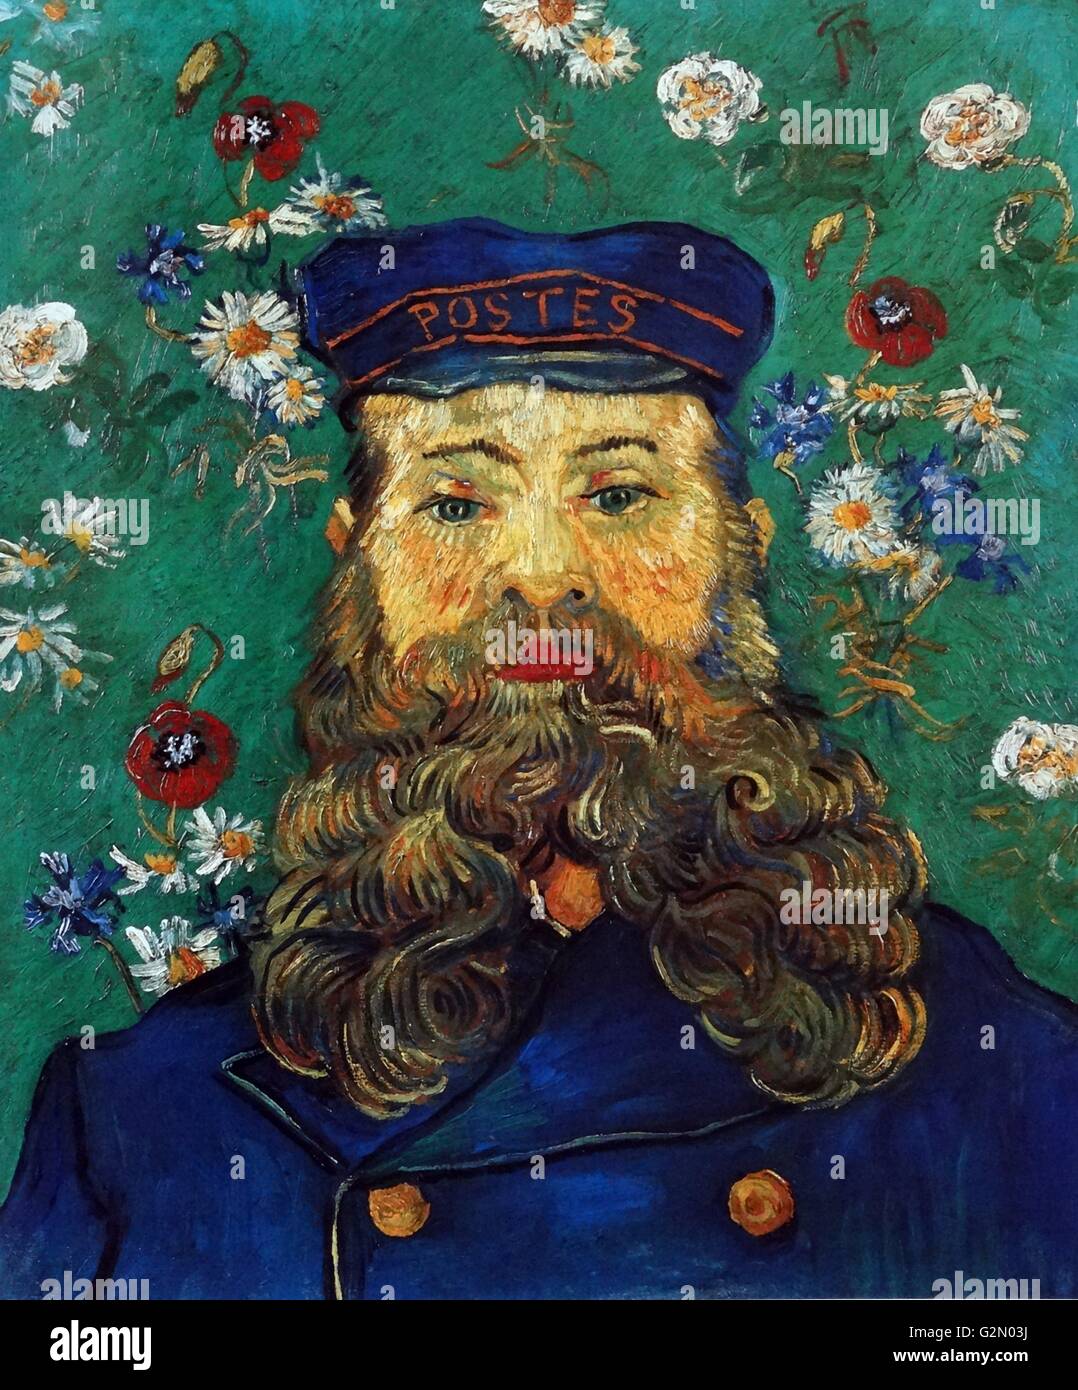 Óleo sobre lienzo pintada por el famoso artista holandés Vincent Van Gogh (30 de marzo de 1853 - 29 de julio de 1890), el trabajo titulado 'el retrato del cartero Joseph Roulin'. Terminado en 1889. Foto de stock